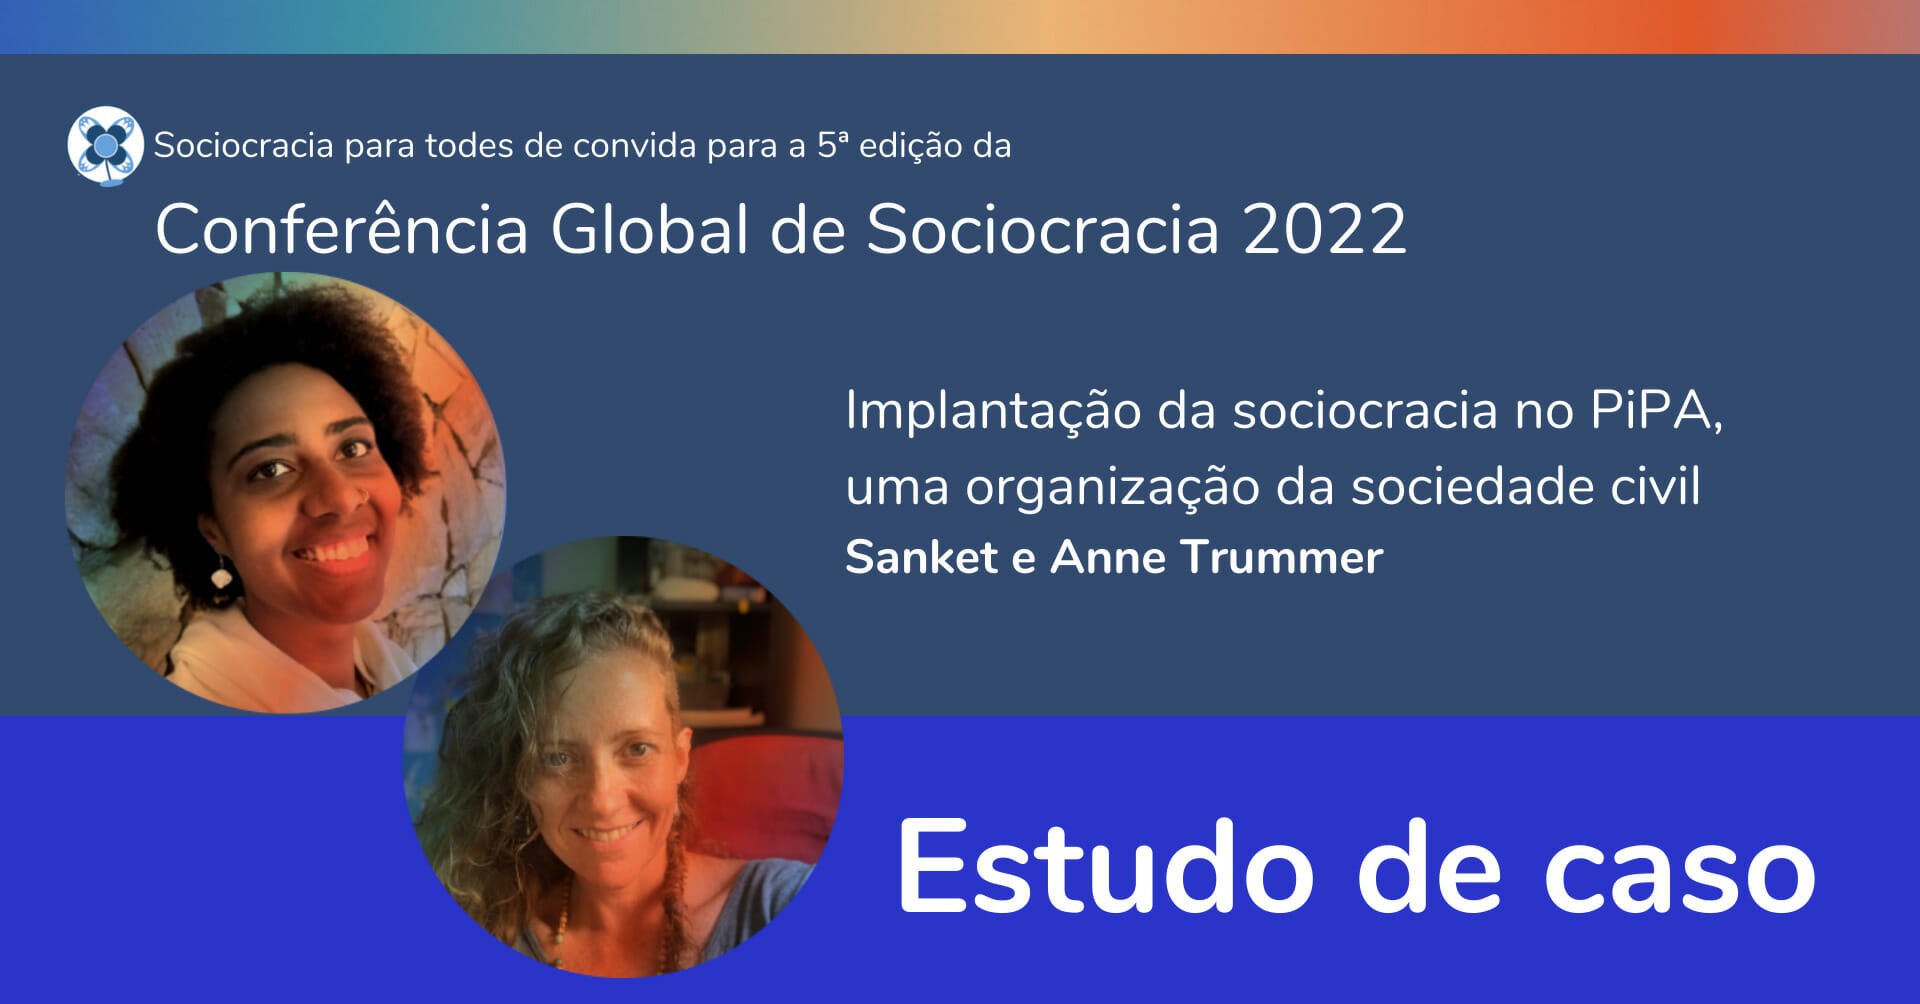 Implantação da sociocracia no PiPA, uma organização da sociedade civil —Sanket e Anne Trummer